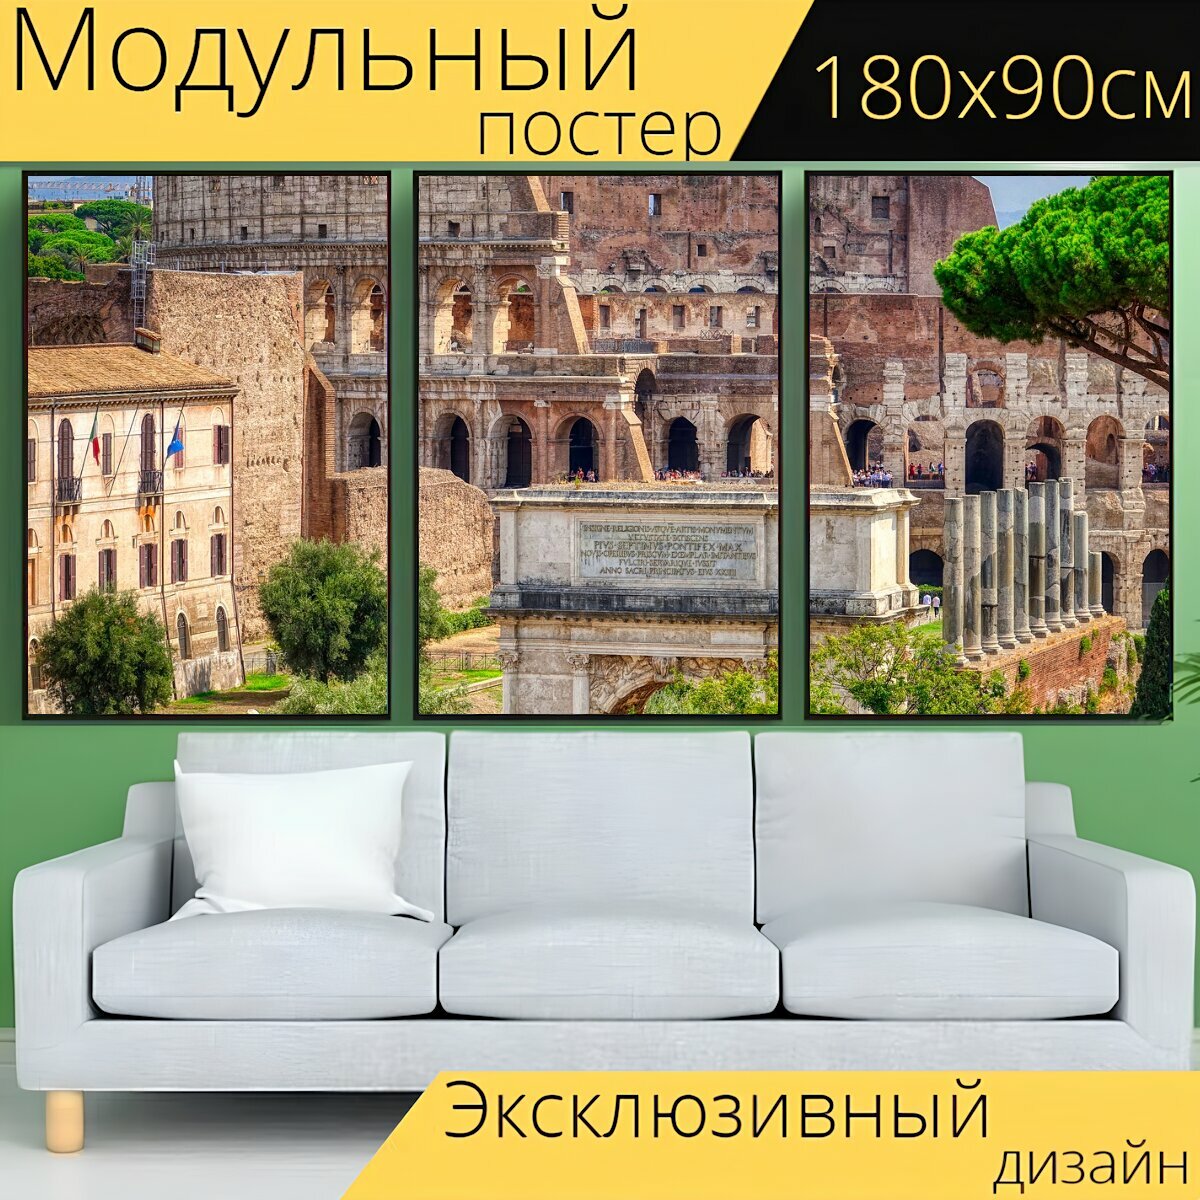 Модульный постер "Италия, рим, колизей" 180 x 90 см. для интерьера